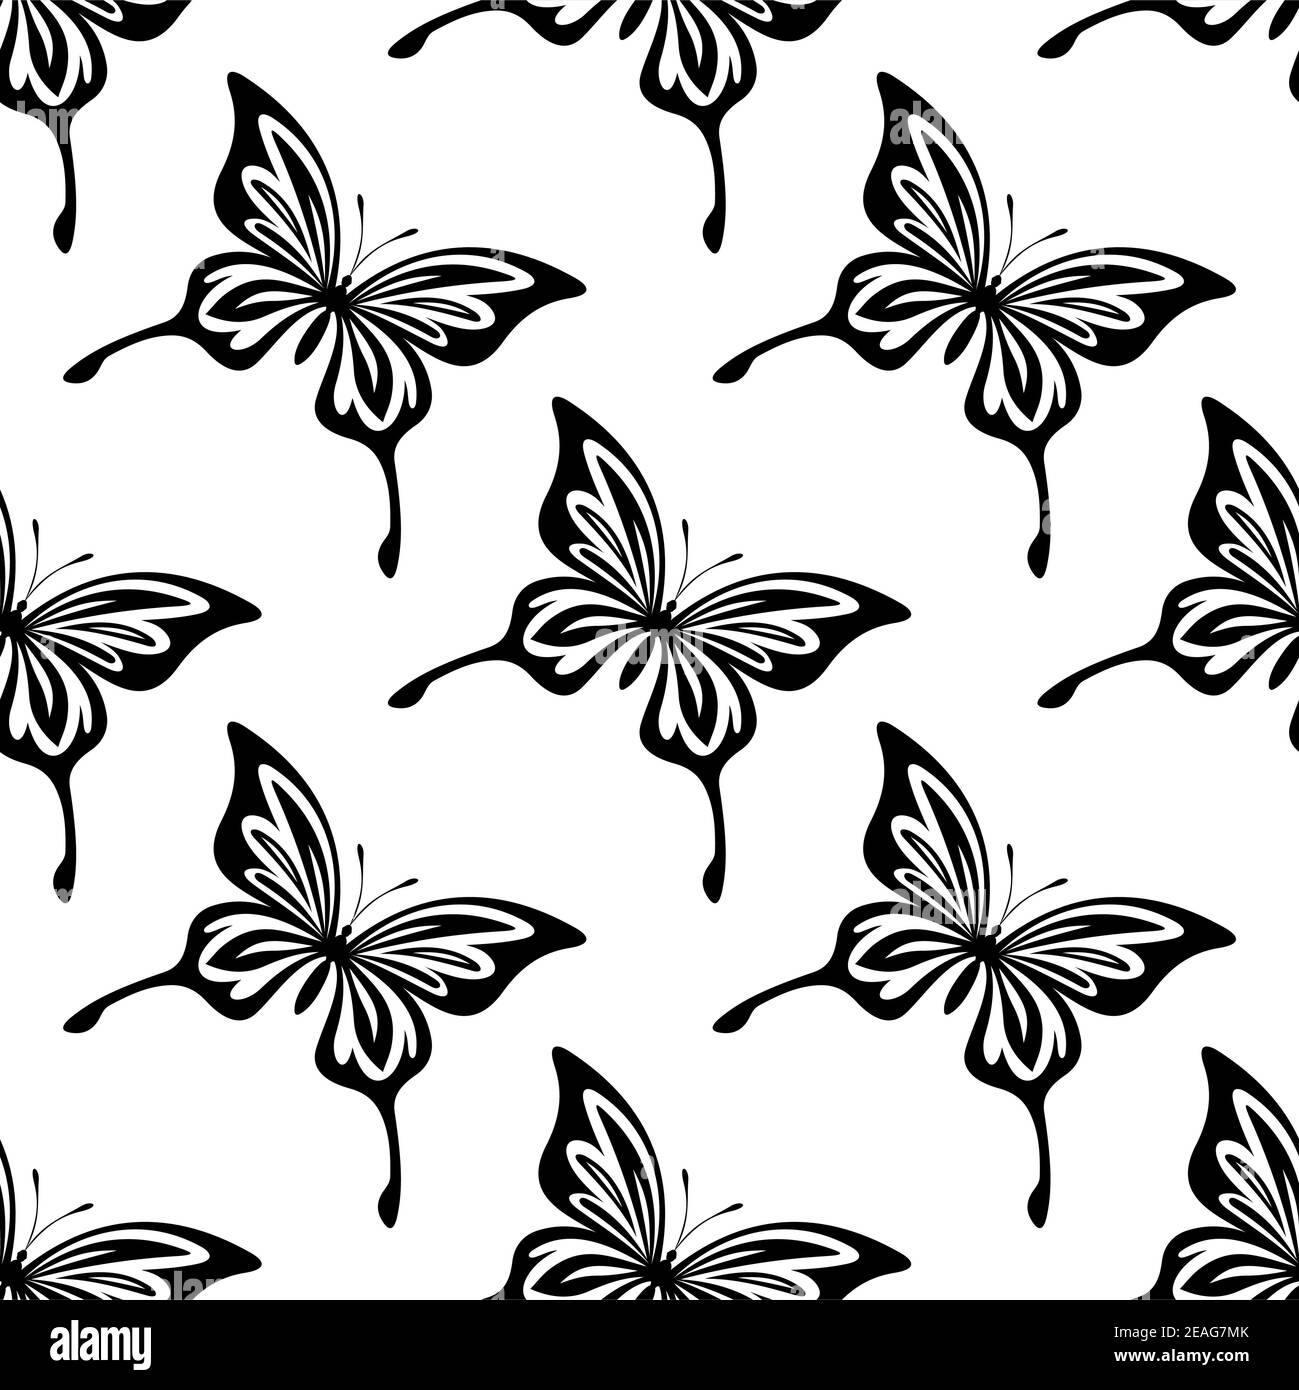 Wiederholen Sie nahtlos schwarz-weiß Muster von Schmetterlingen mit ausgebreiteten Flügeln geformt wie die des Schwalbenschwanzes, auf einem weißen Hintergrund Stock Vektor